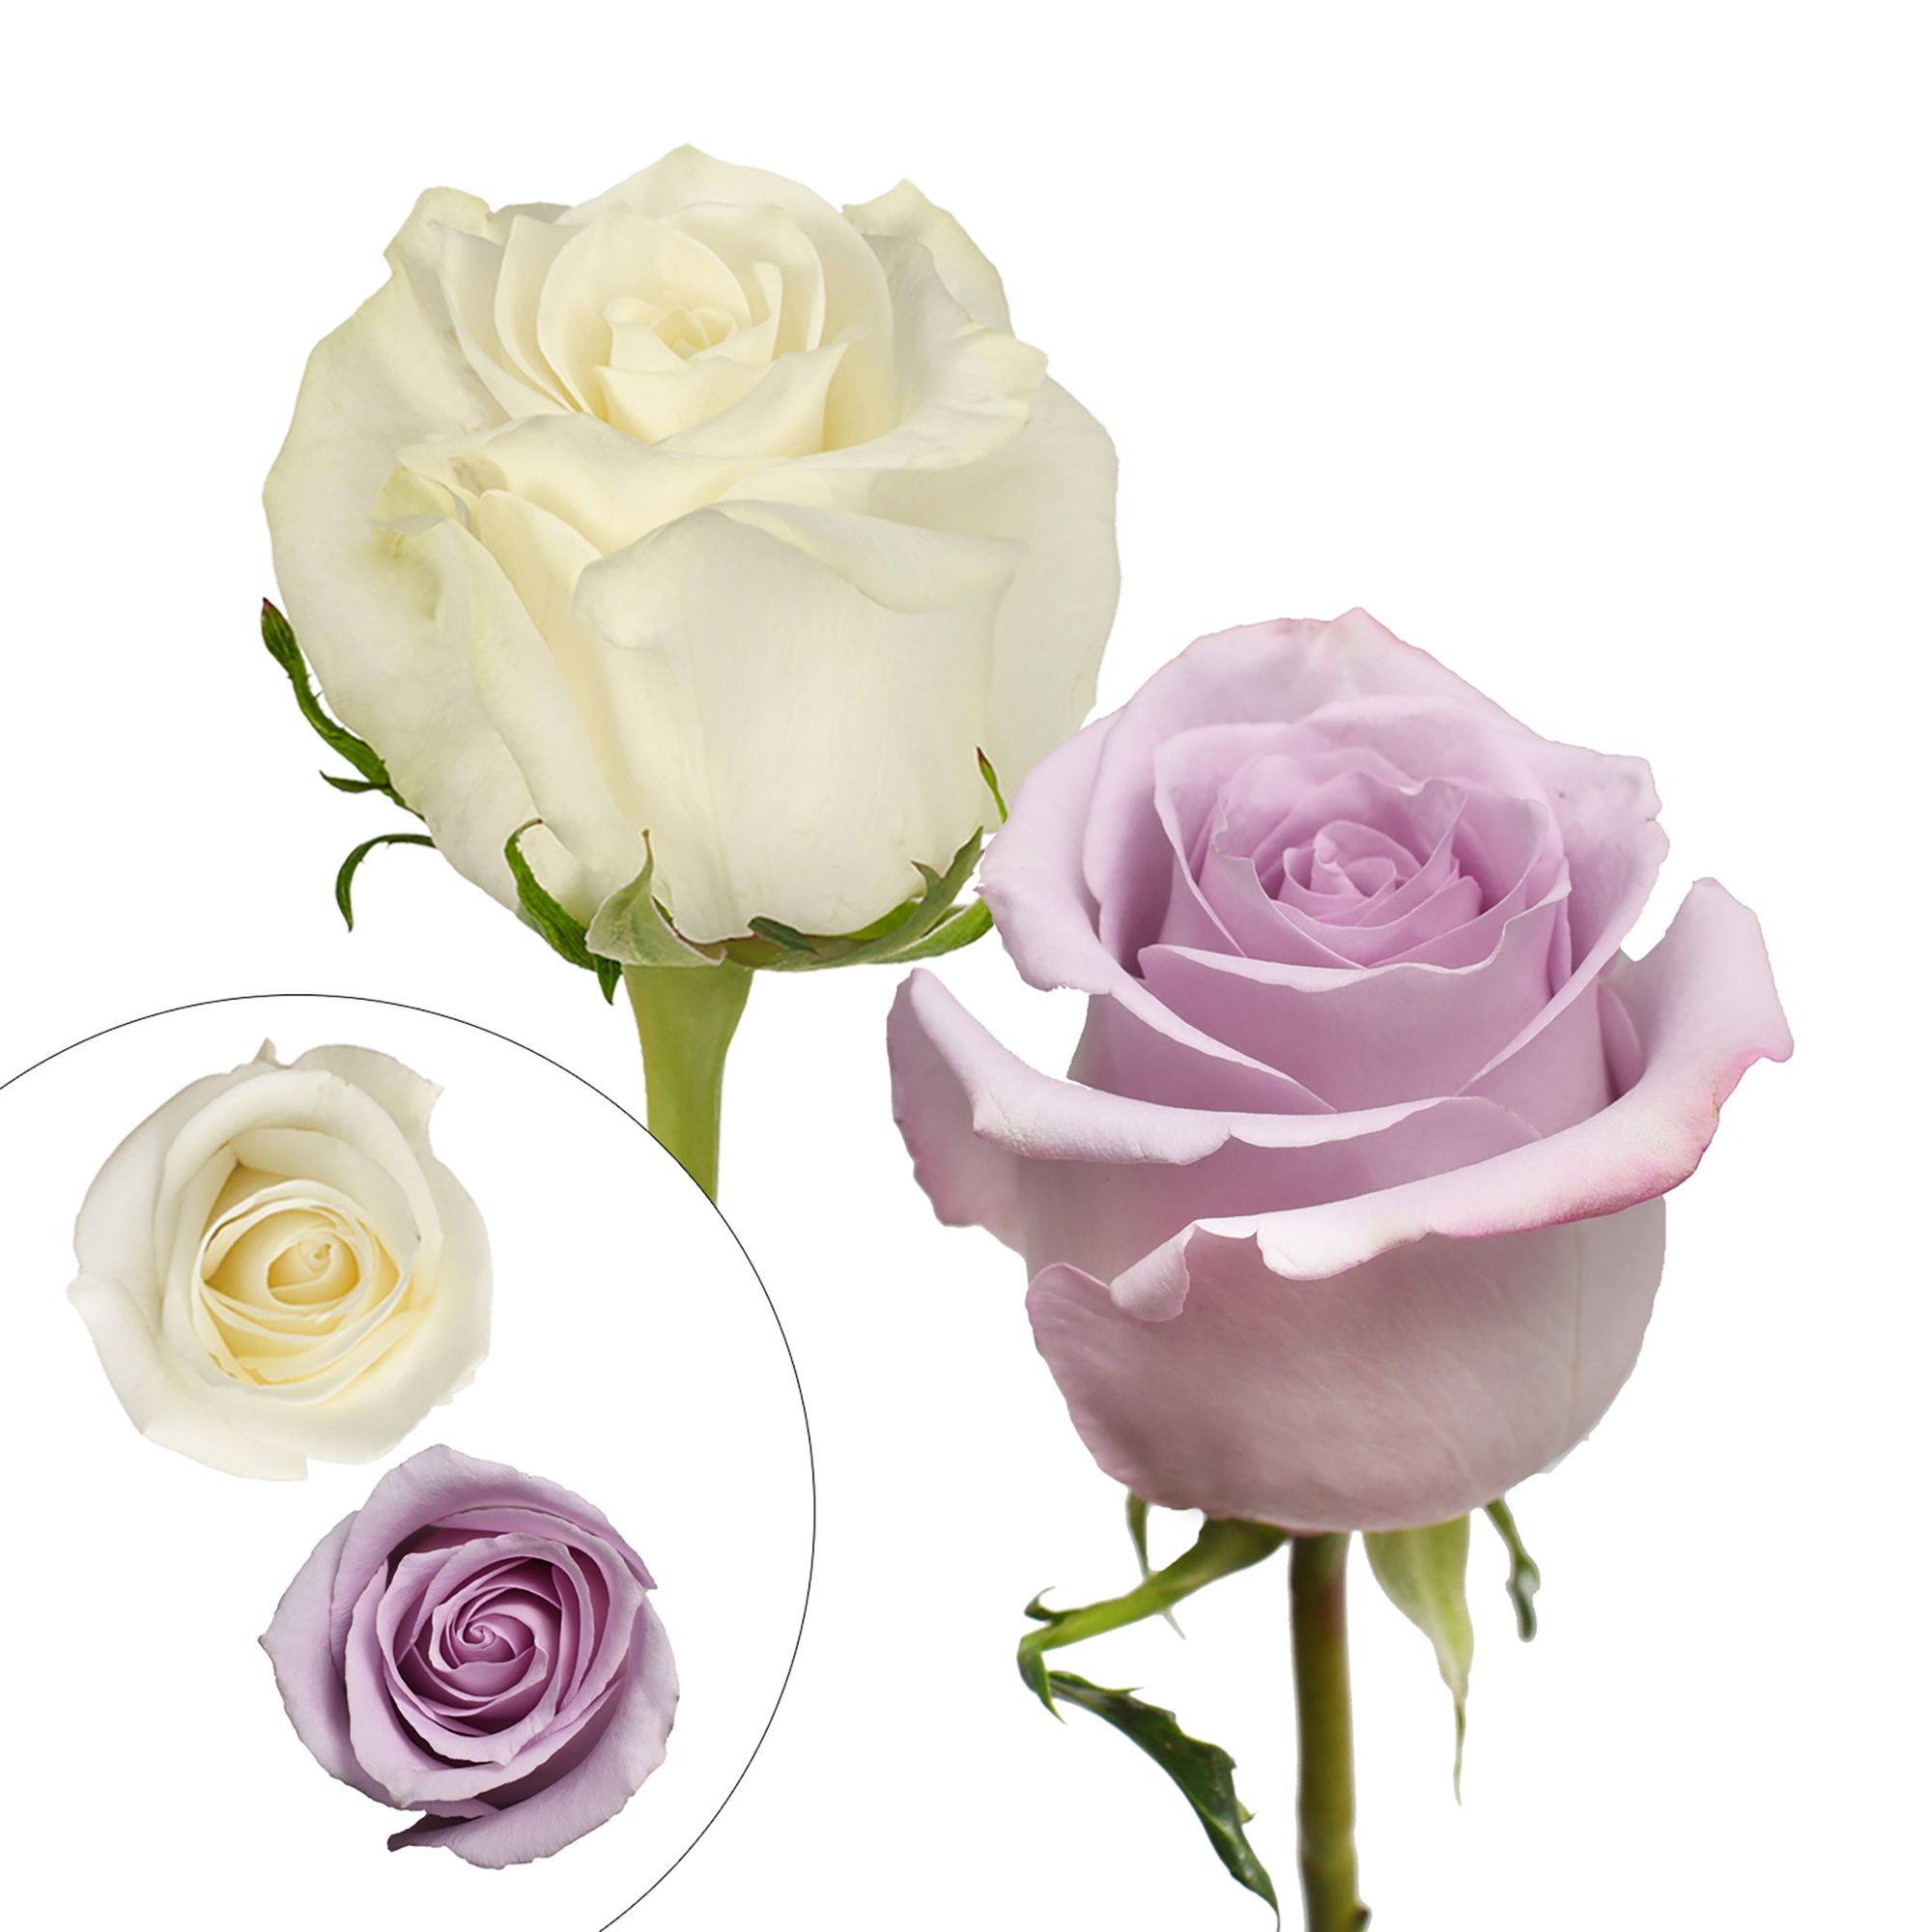 Lavender & White Roses, 125 Stems